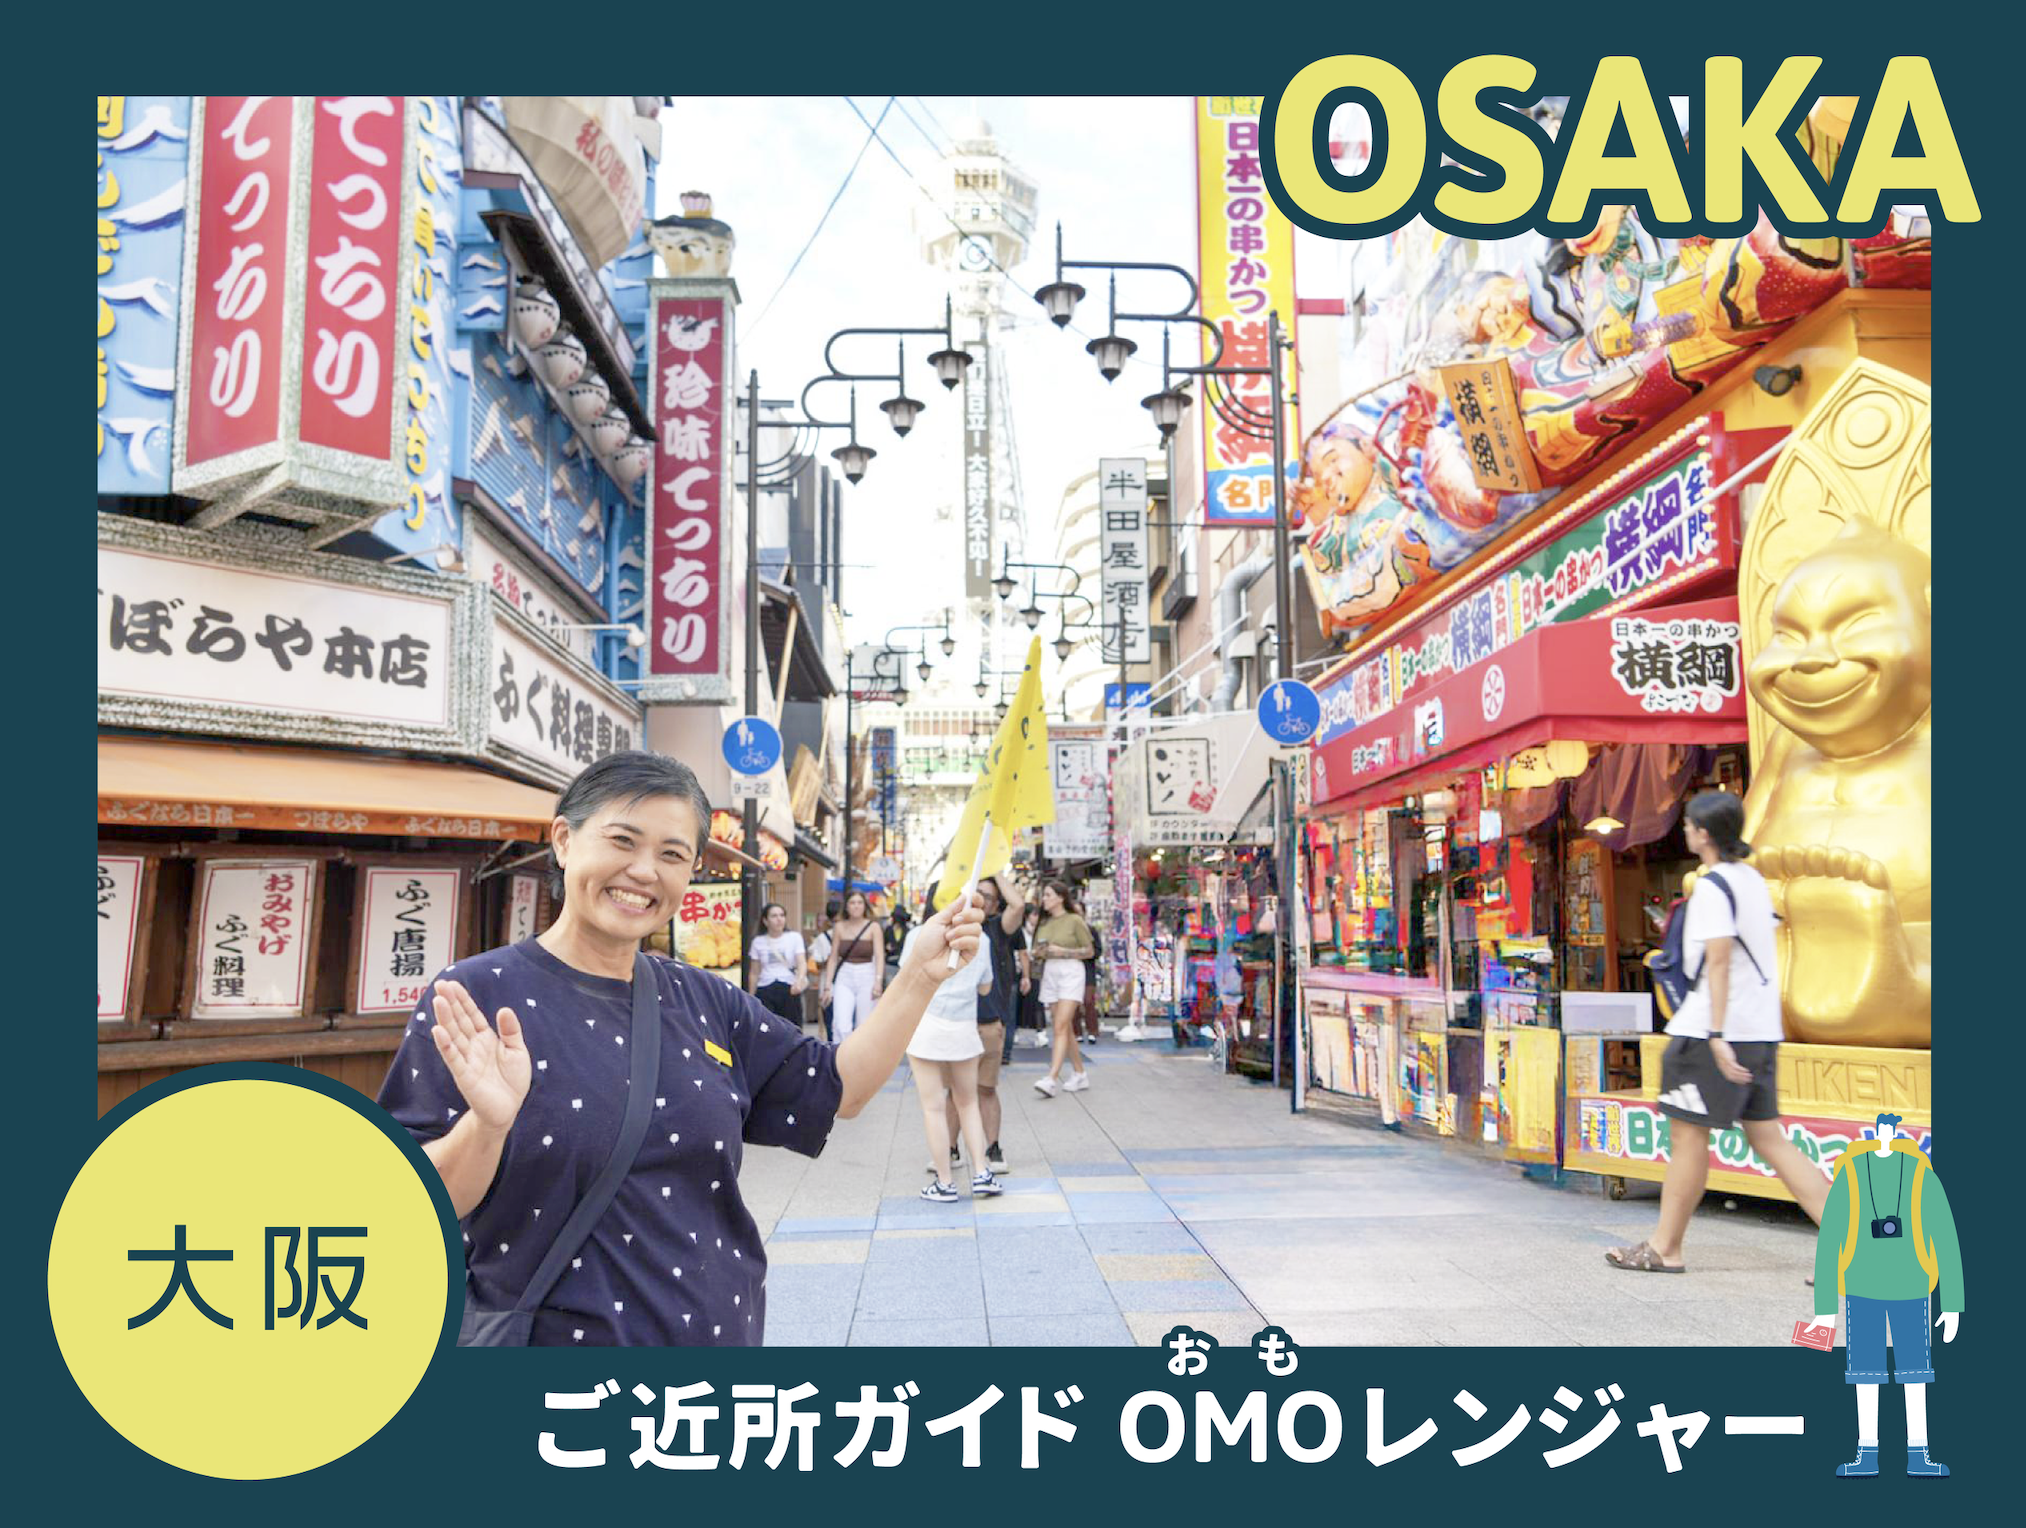 【OMO7 오사카】 거리로 뛰쳐나와 거리의 매력에 접한다!「이웃 가이드 OMO 레인저」